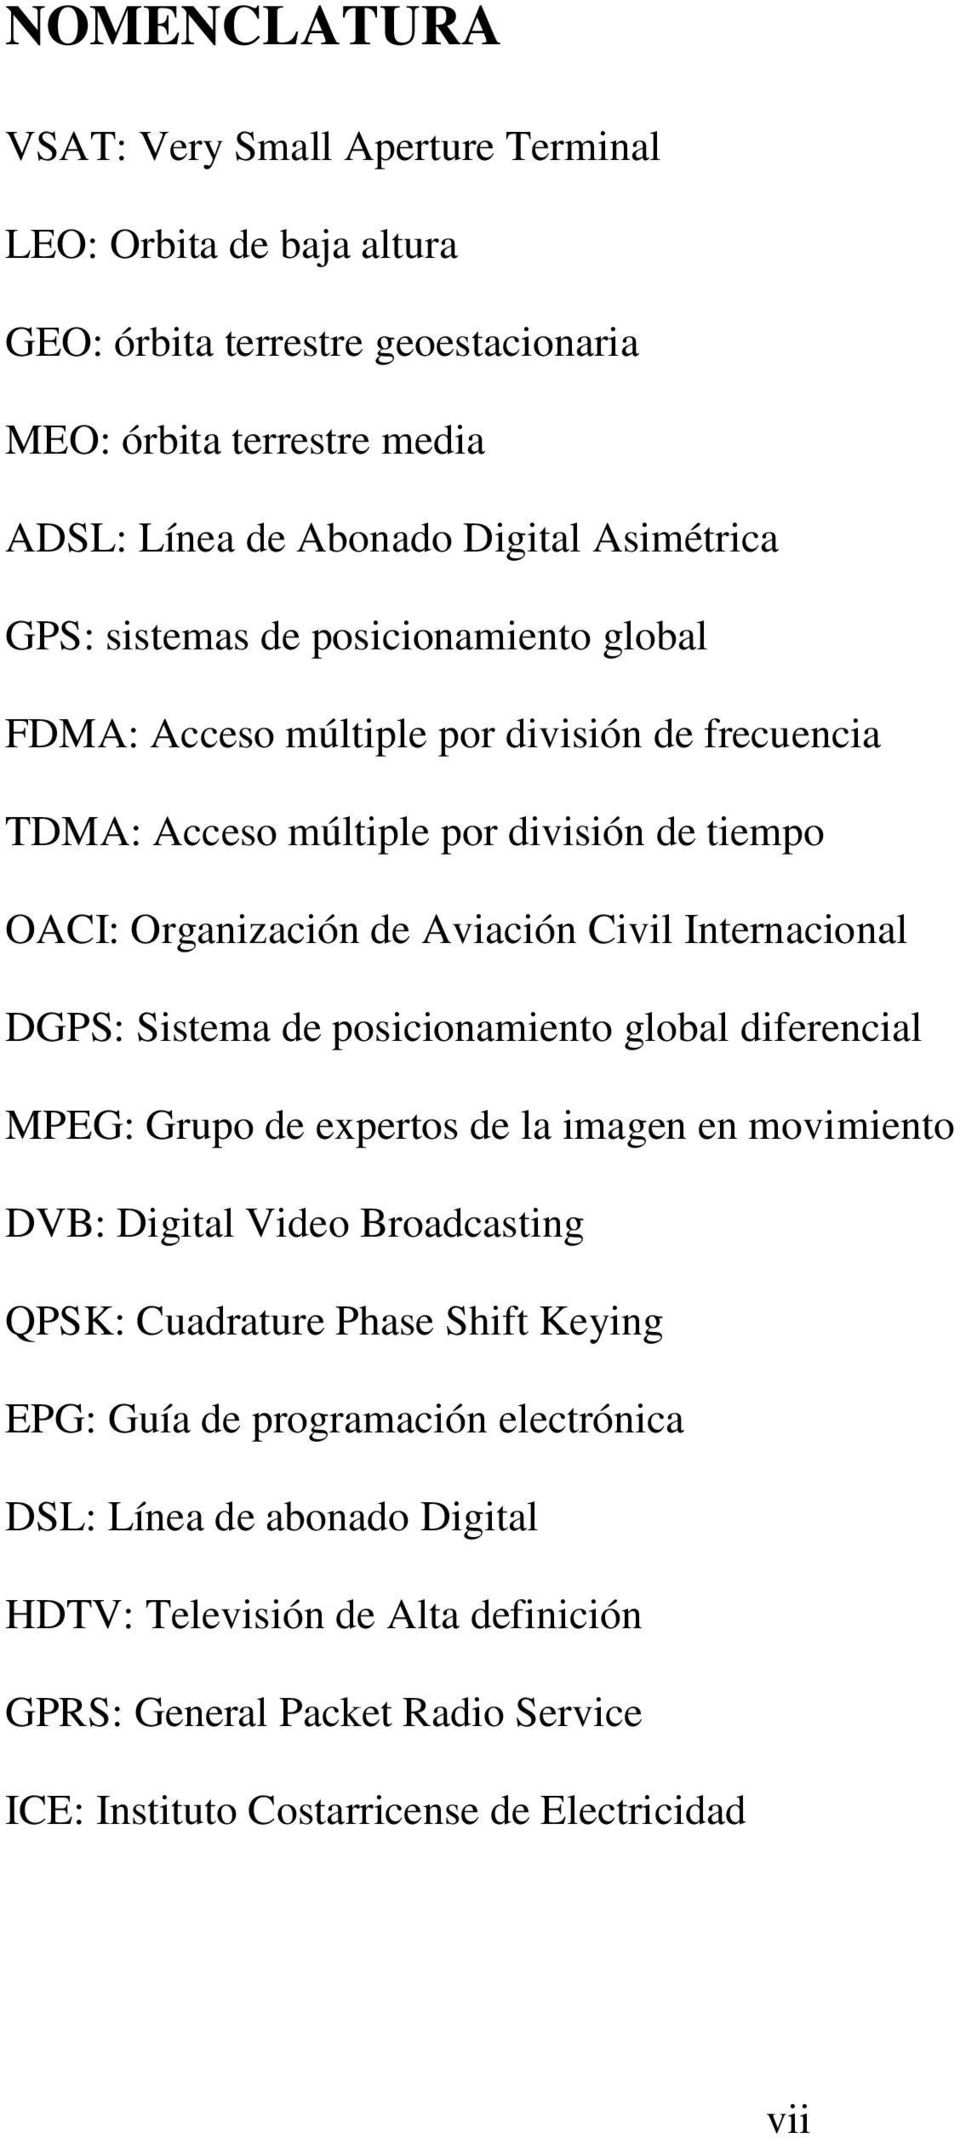 Internacional DGPS: Sistema de posicionamiento global diferencial MPEG: Grupo de expertos de la imagen en movimiento DVB: Digital Video Broadcasting QPSK: Cuadrature Phase Shift